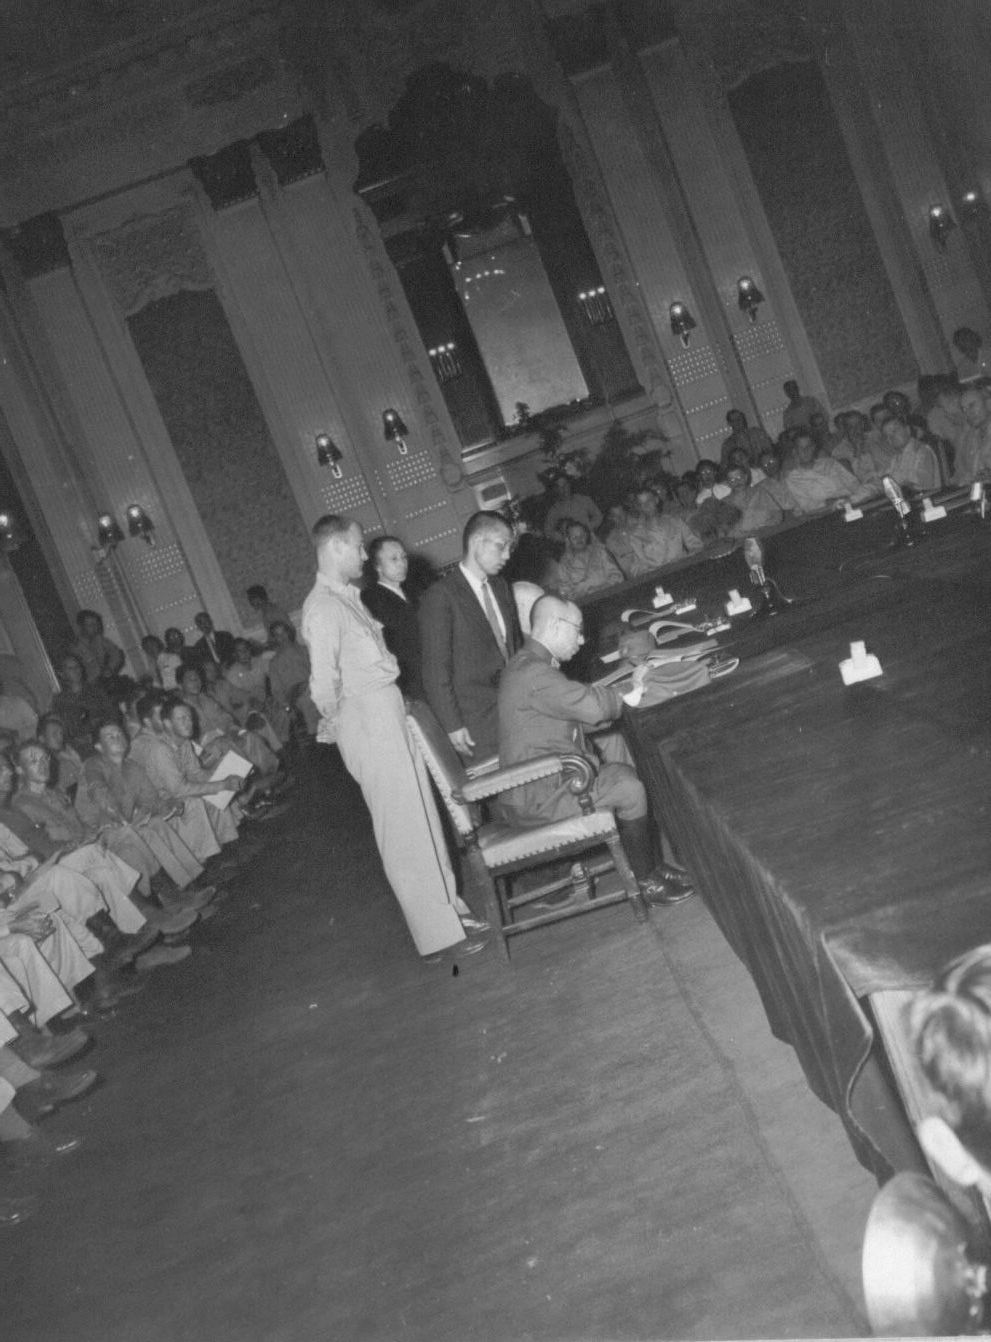 미 제24사단 하지 중장을 비롯한 미군들이 지켜보는 가운데 조선총독부 제1회의실에서 아베 총독이 항복문서에 서명하고 있다(1945. 9. 9.).